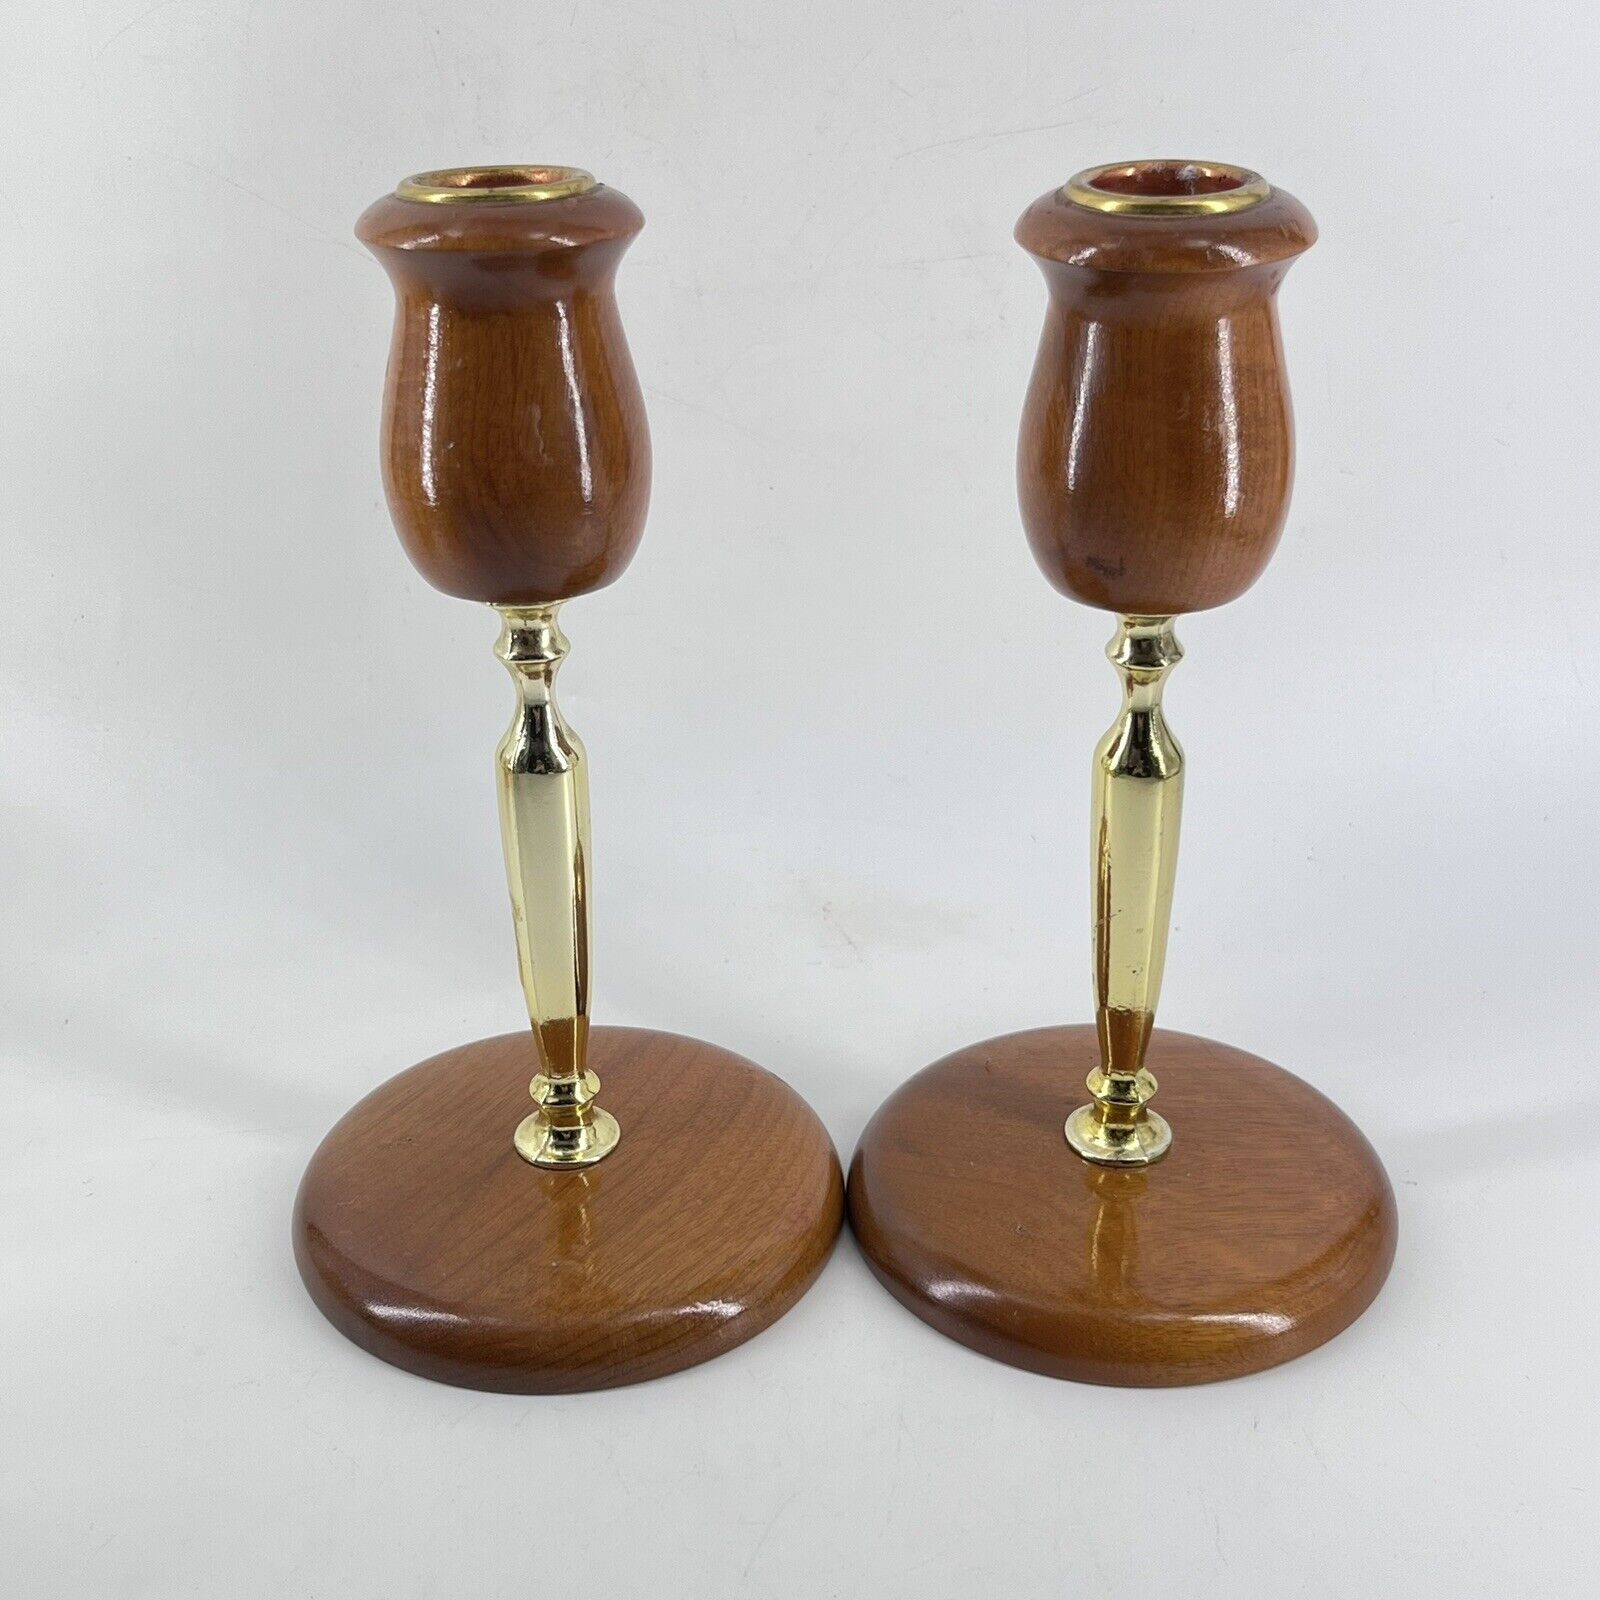 Oregon Myrtlewood Hand Carved Wooden Candlestick Candle Holders Vintage Pair